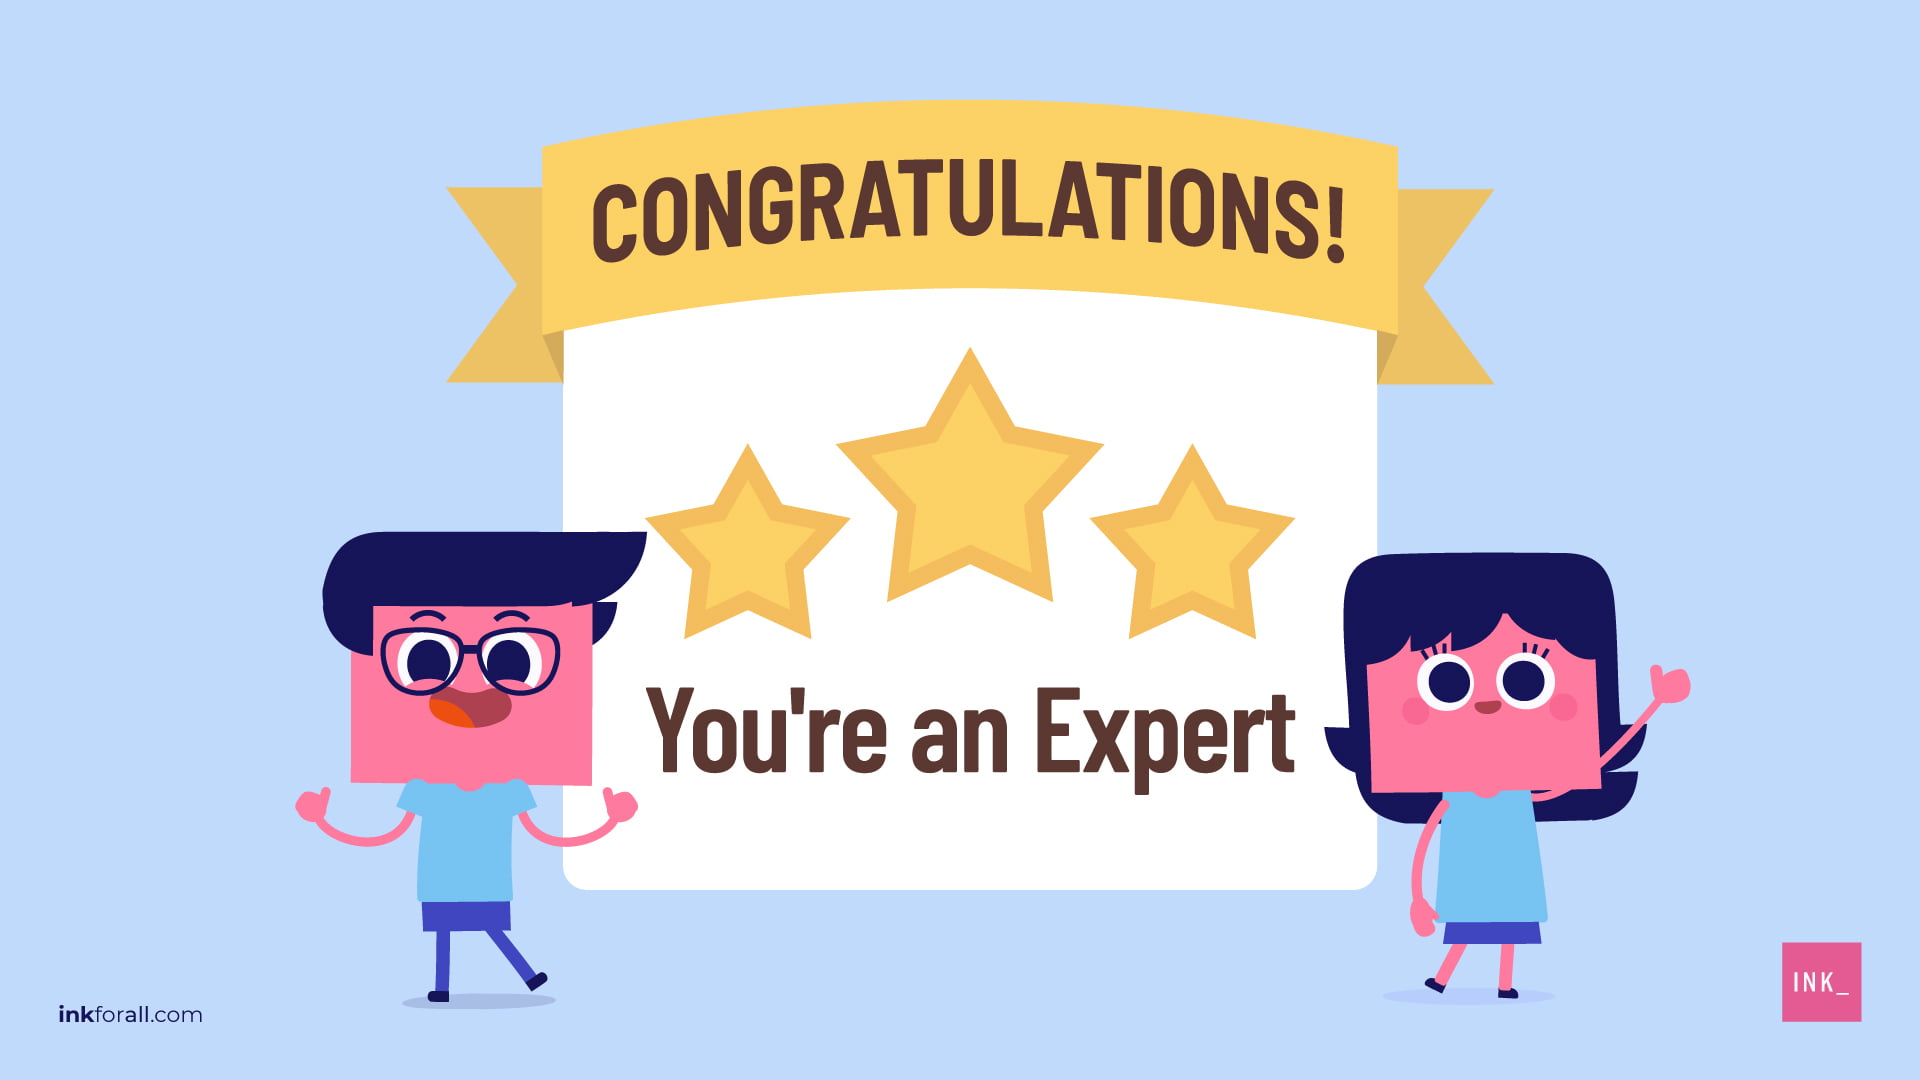 ¡Eres un experto!'re an expert!